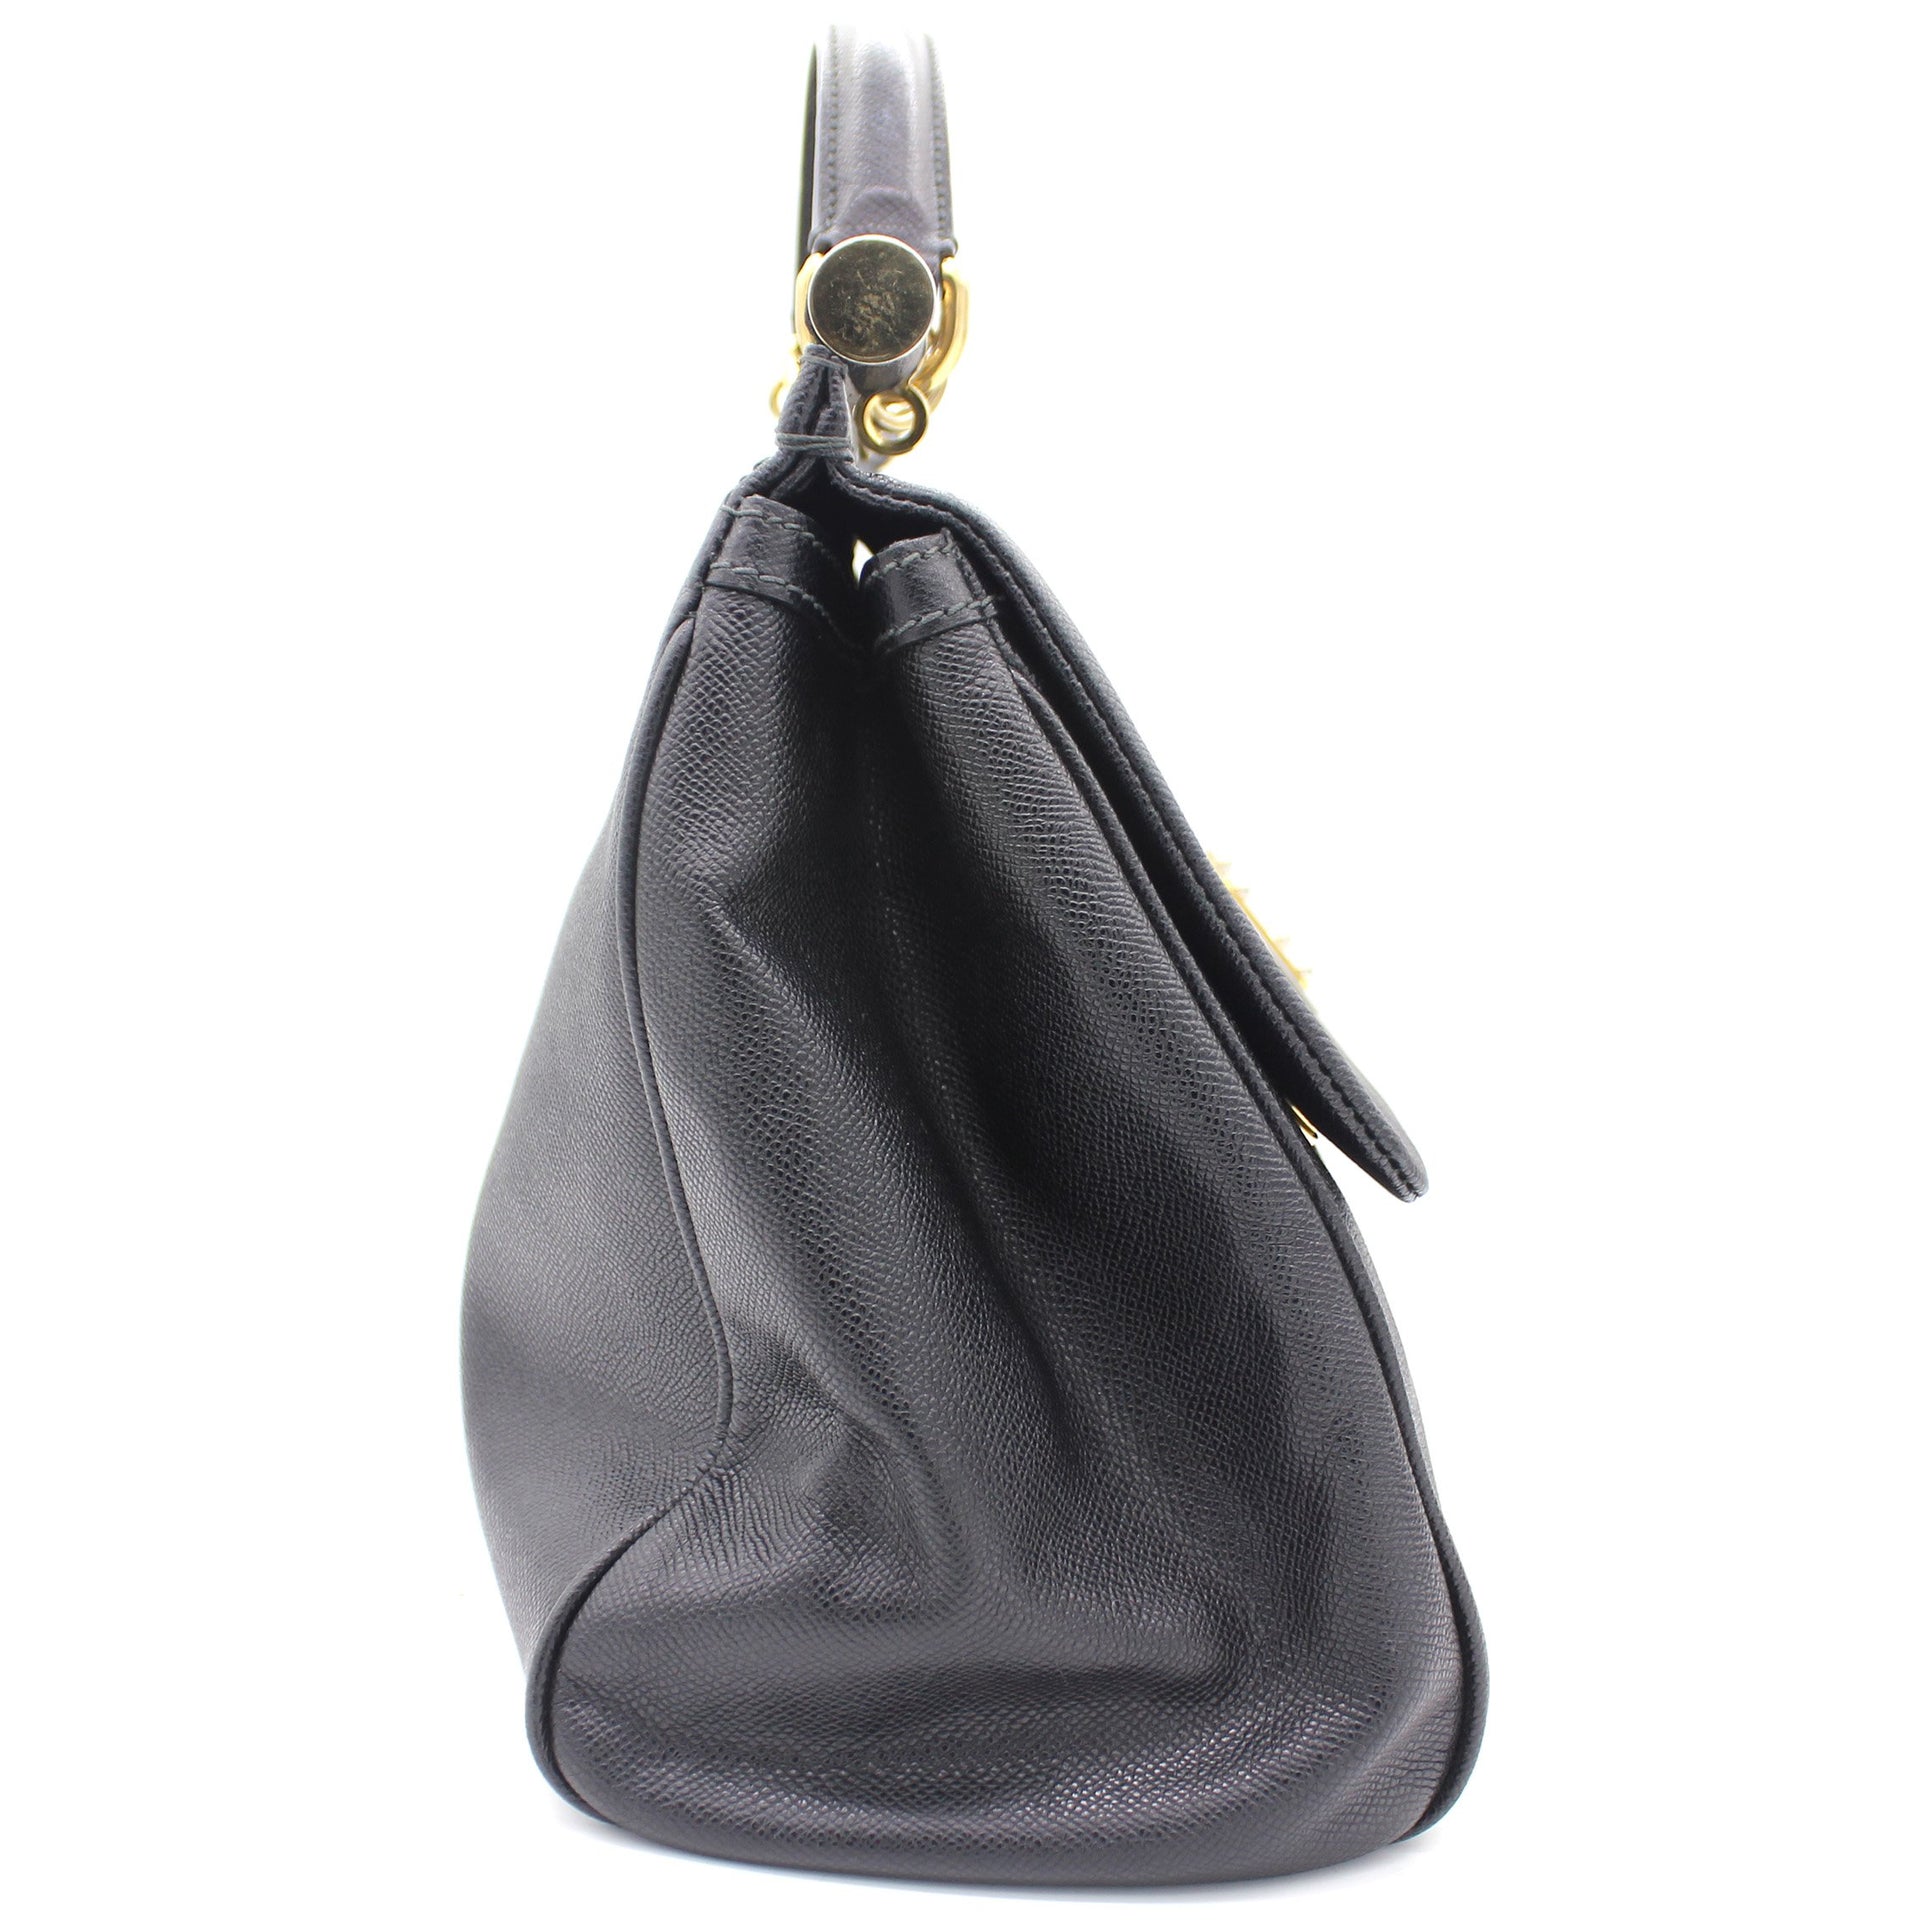 Dolce & Gabbana 'Sicily Large' shoulder bag, Women's Bags